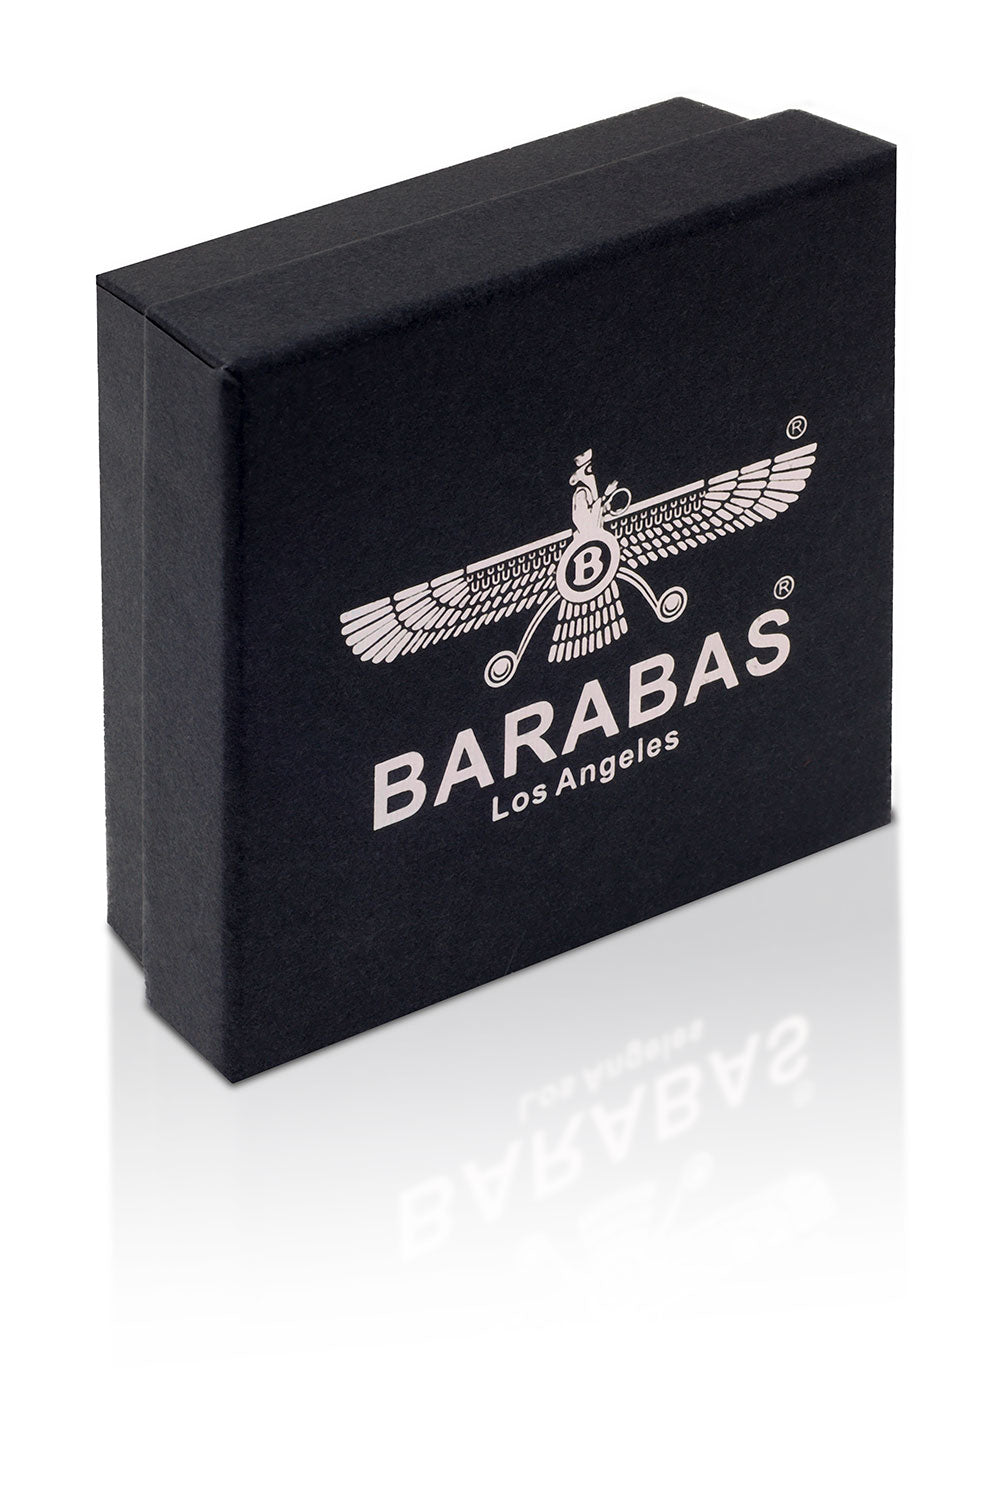 Barabas Unisex Obsidian Stone Braided Leather Bangle Bracelets 4BMS04 Black